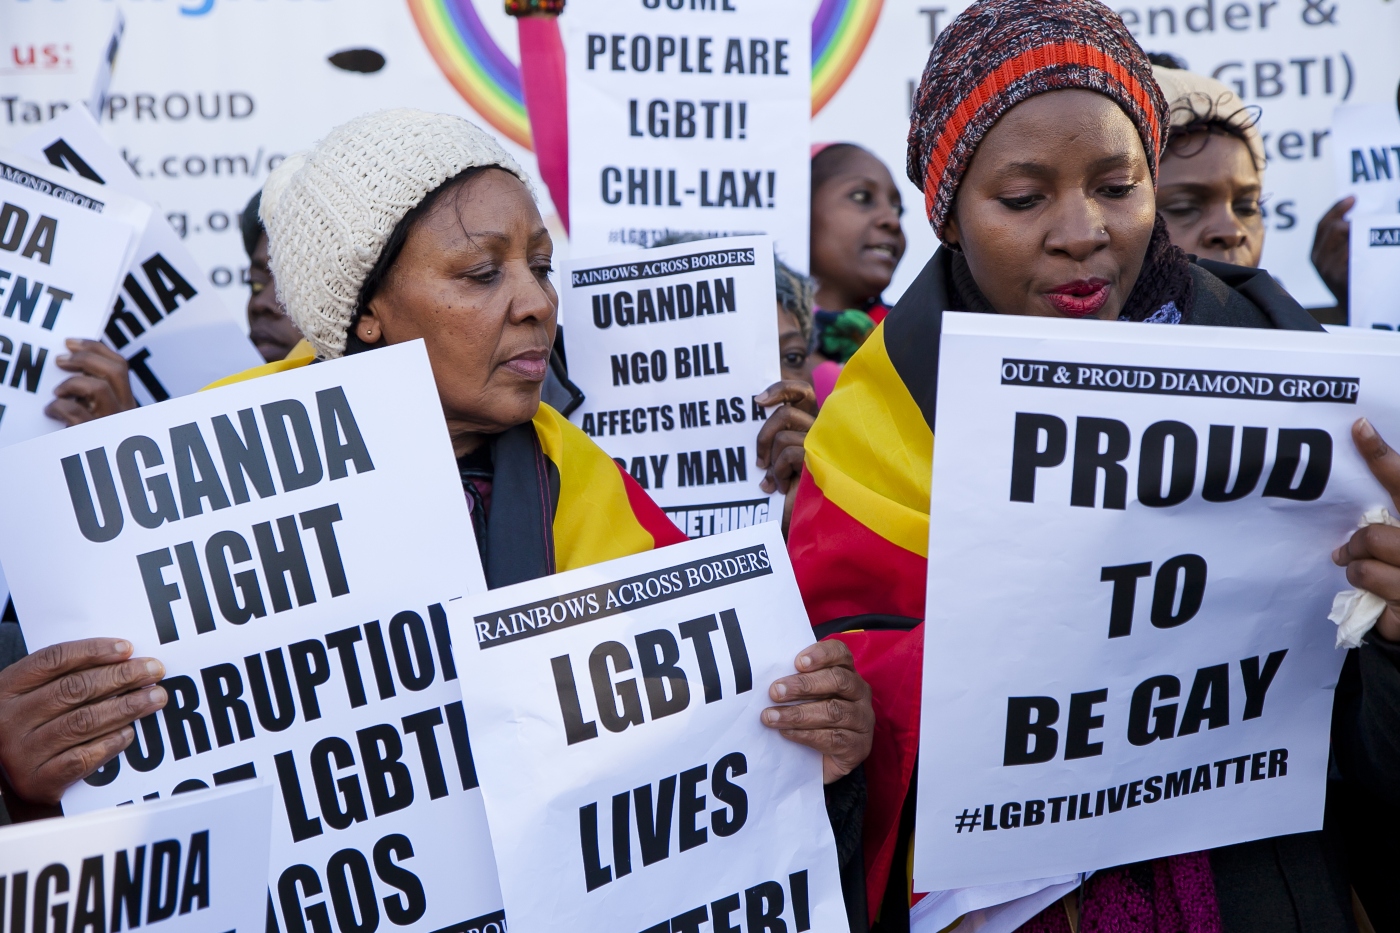 Ουγκάντα: Υπερψηφίστηκε νομοσχέδιο κατά της ομοφυλοφιλίας – Προβλέπει ισόβια και θανατική ποινή